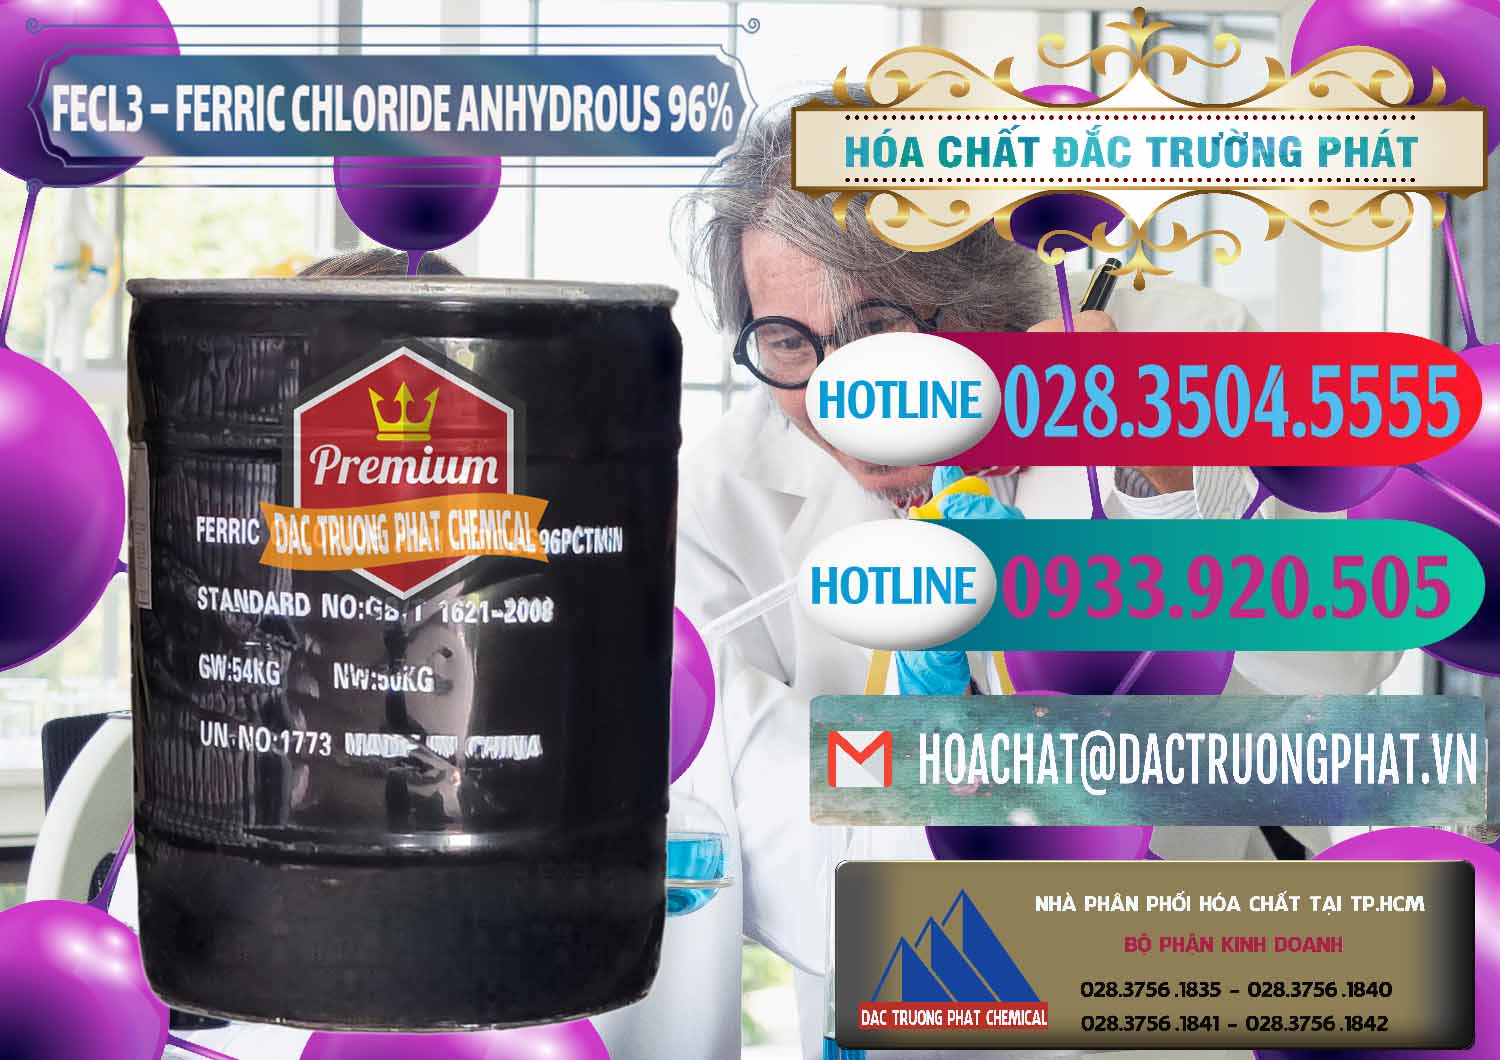 Nơi chuyên kinh doanh và bán FECL3 – Ferric Chloride Anhydrous 96% Trung Quốc China - 0065 - Cty cung cấp và nhập khẩu hóa chất tại TP.HCM - truongphat.vn